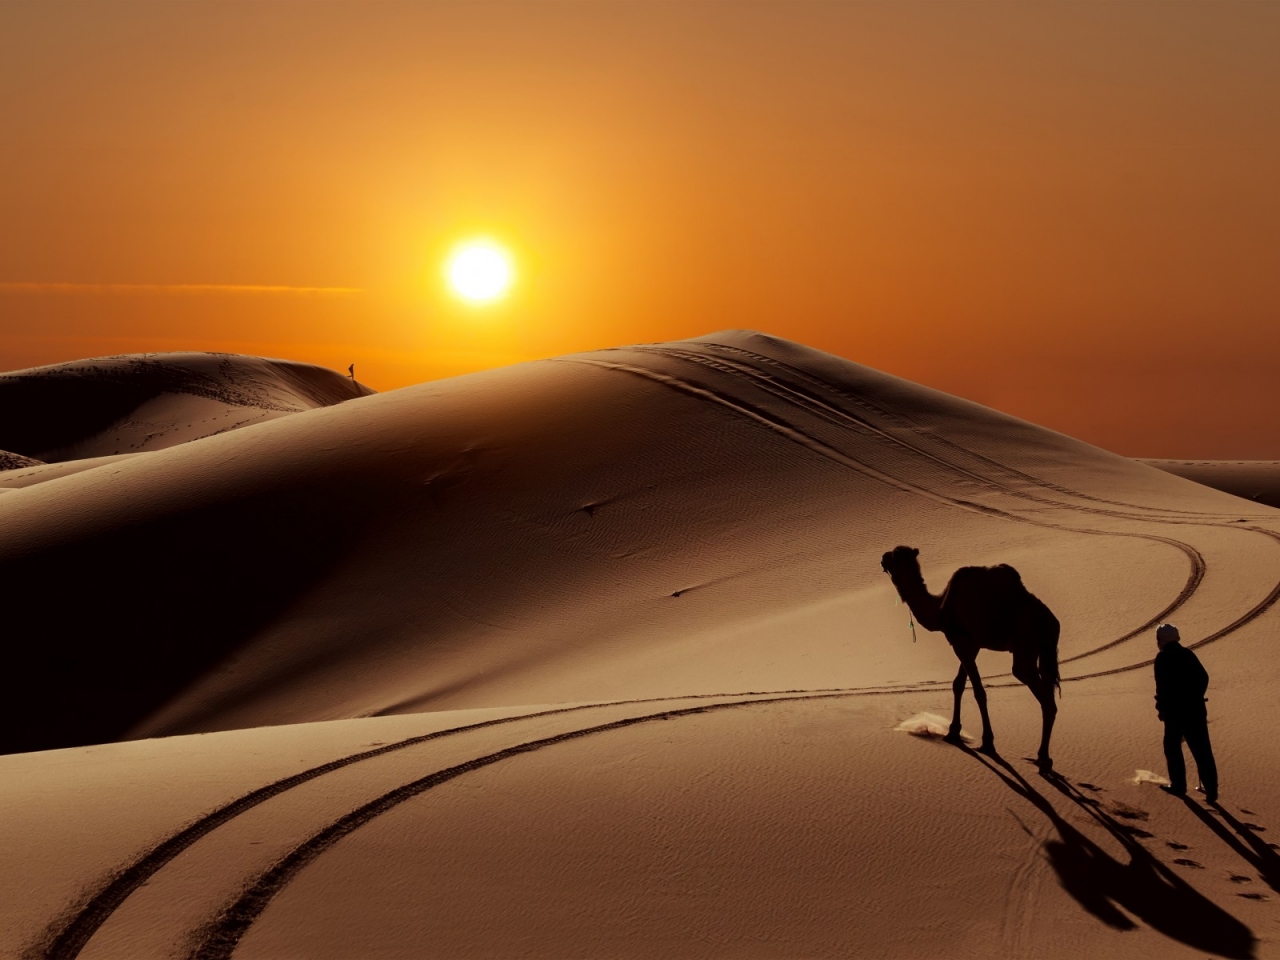 Sunset in Desert for 1280 x 960 resolution